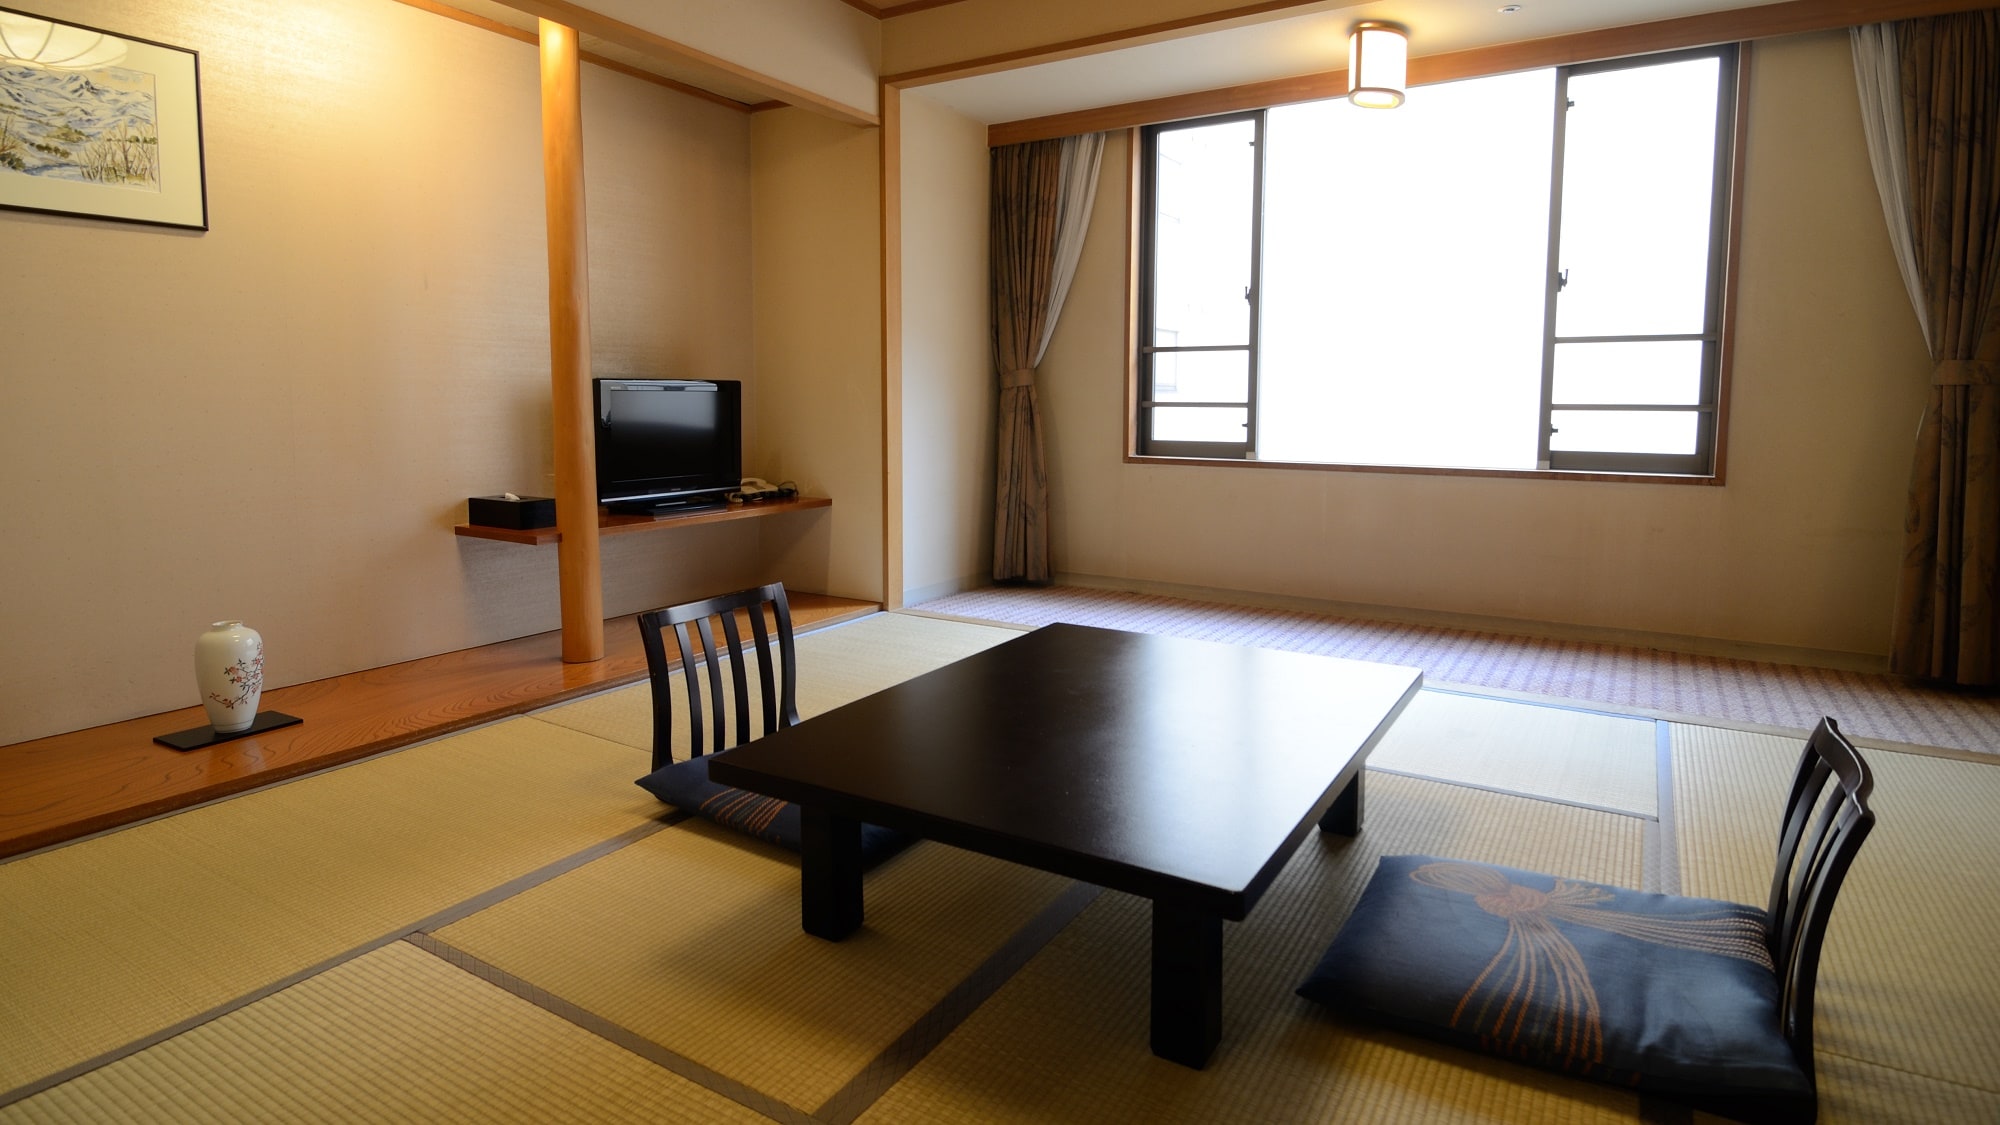 [日式房間8張榻榻米]適合2人入住。一個既不太窄也不太寬的平靜空間。 * 風景是內房的酒店牆